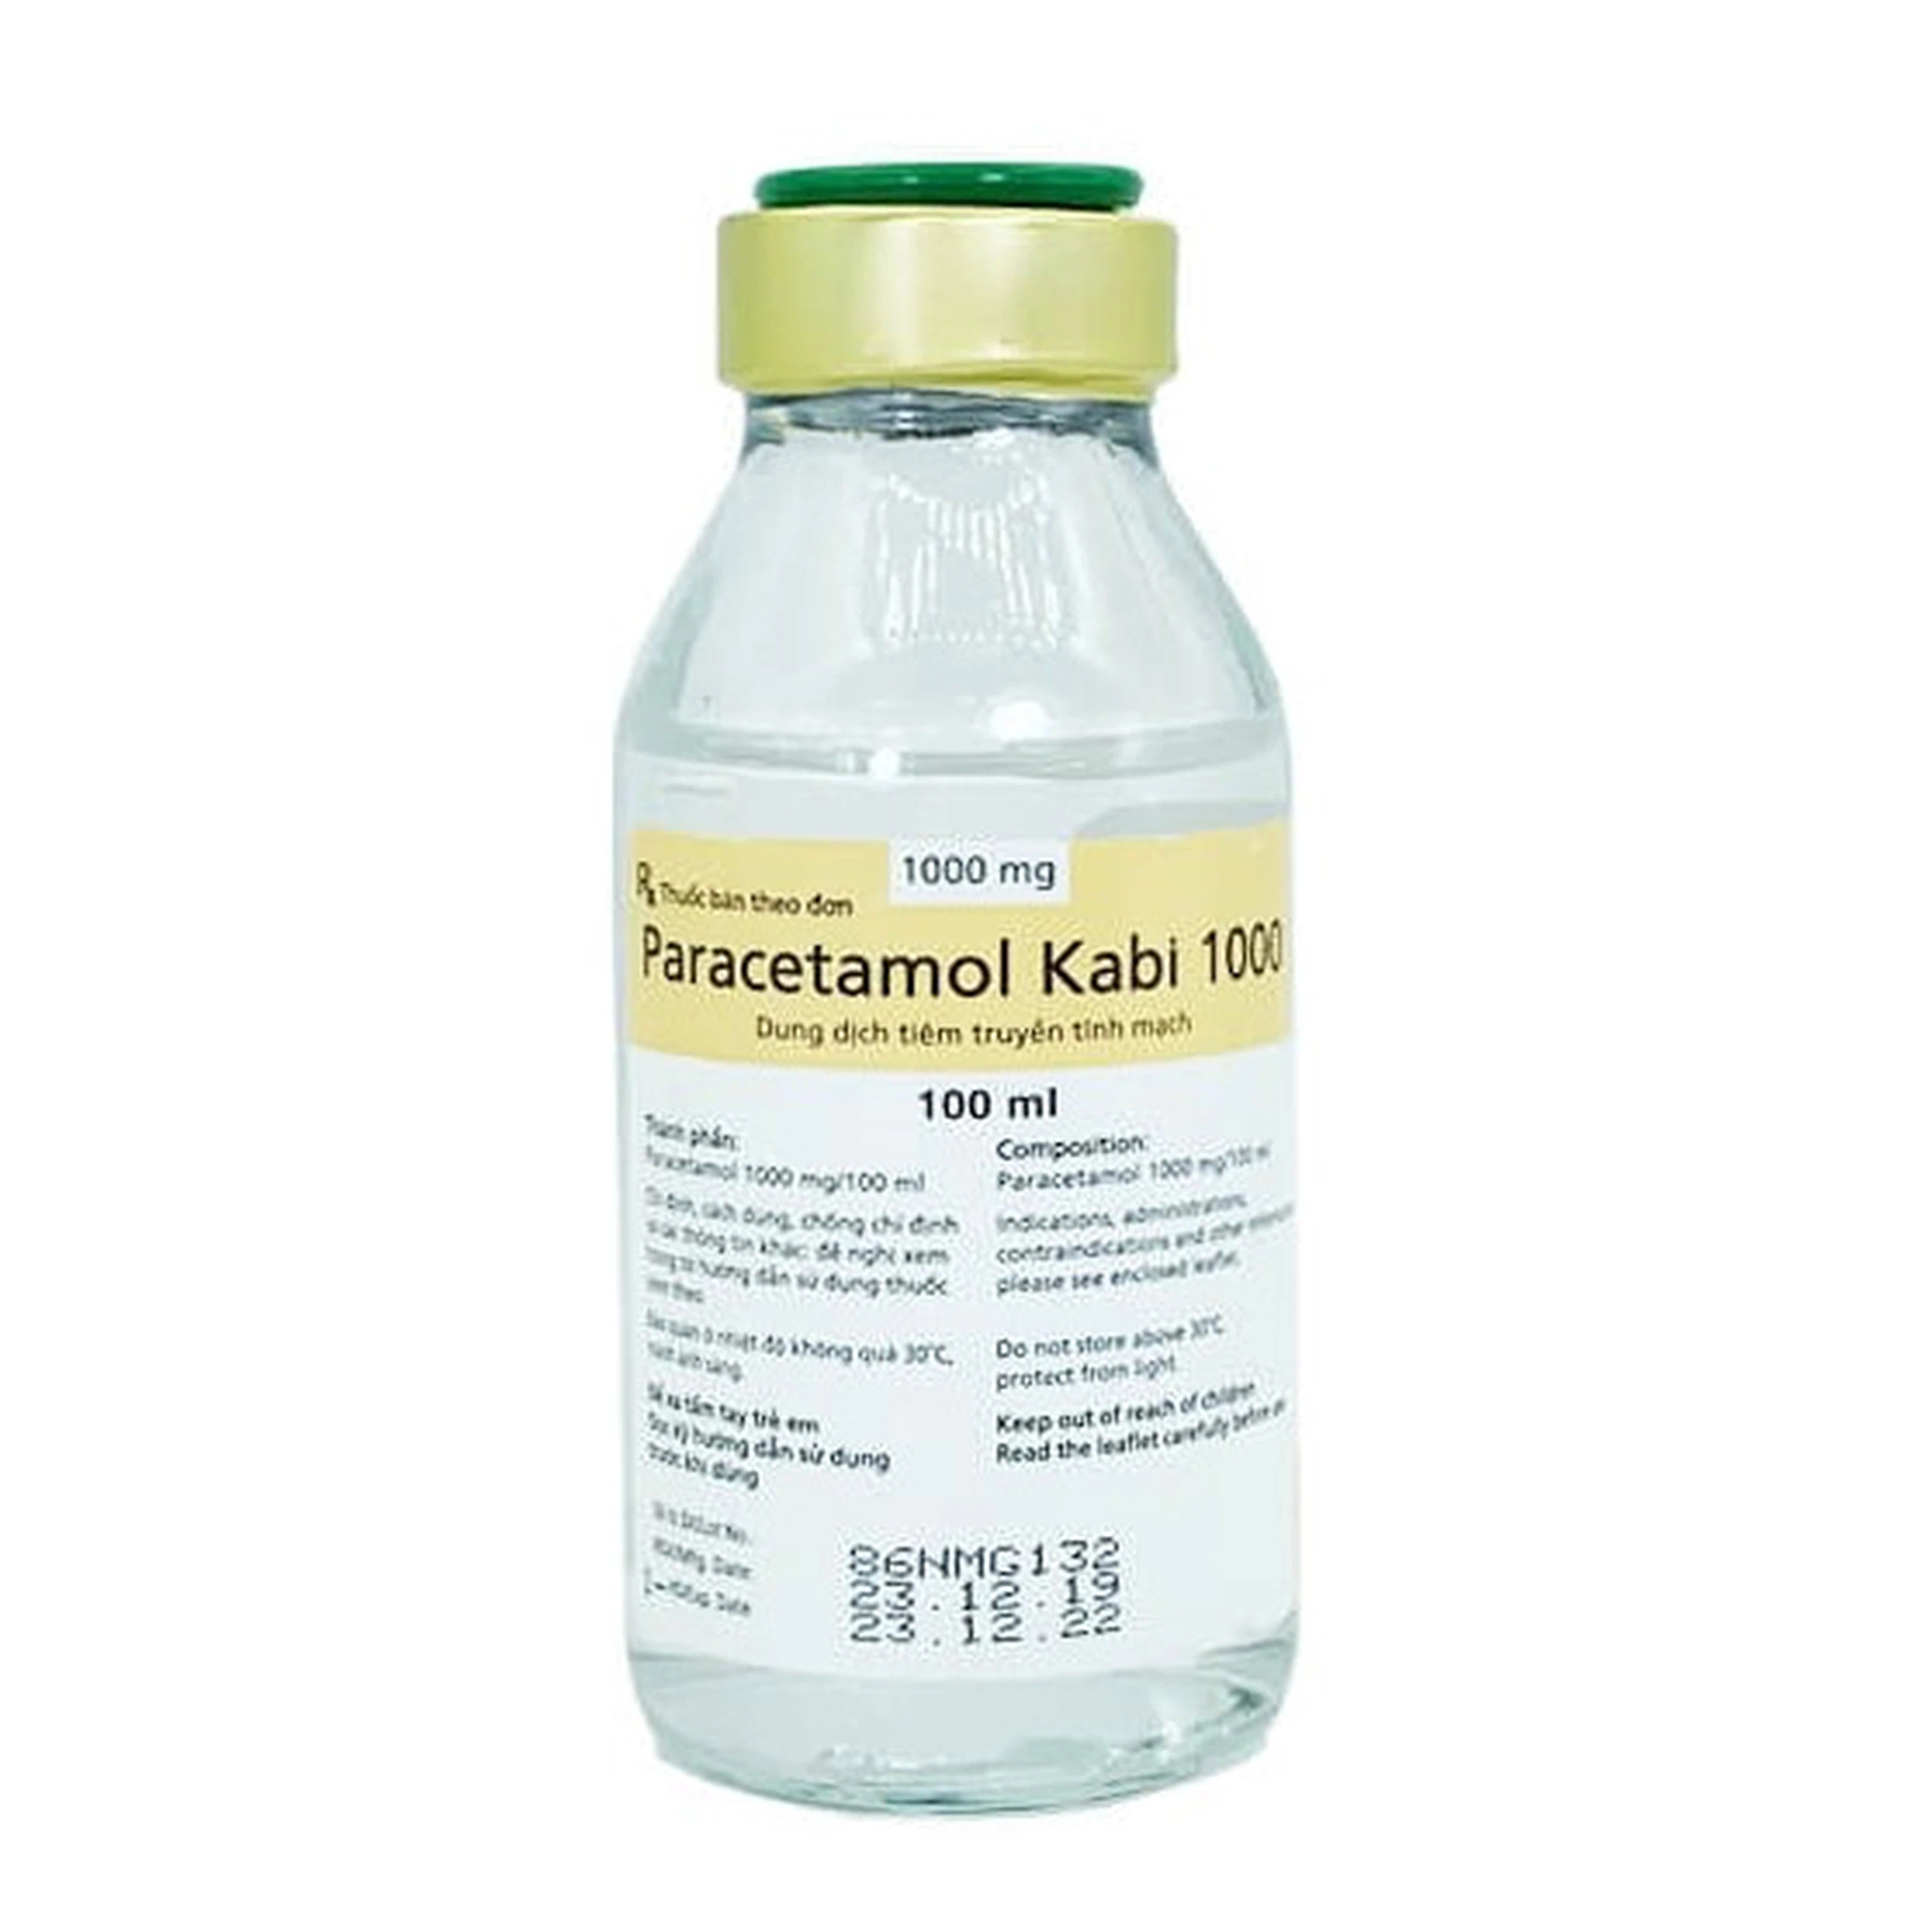 Dịch truyền Paracetamol Kabi 1000mg Fresenius Kabi điều trị ngắn hạn đau vừa và sốt (48 chai x 100ml)